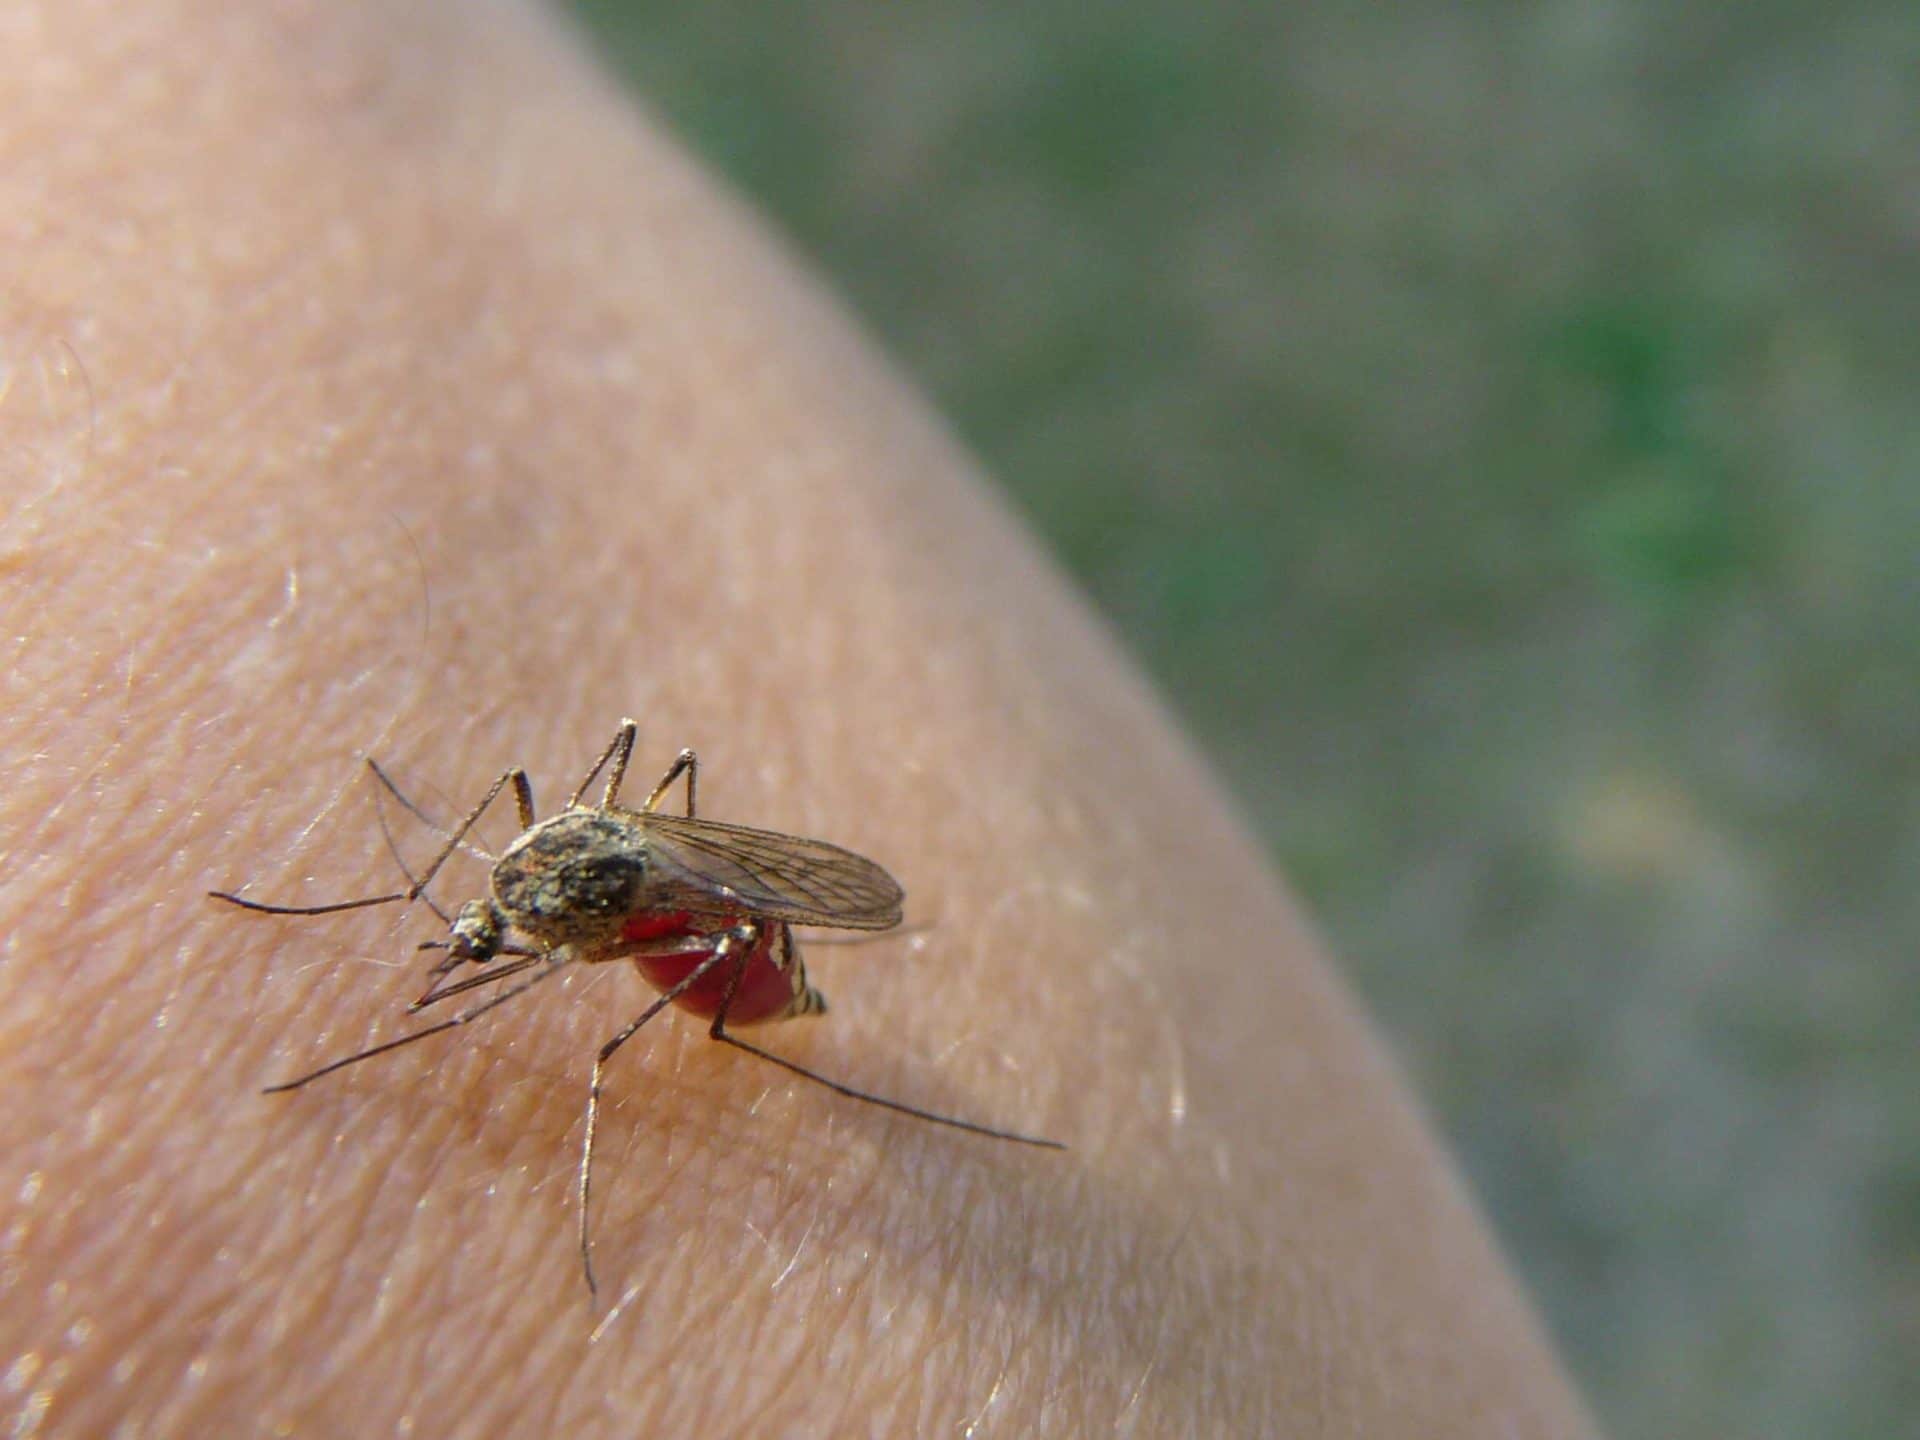 Wer wird von Mücken gestochen? copyright: Kerstin1970 / pixelio.de